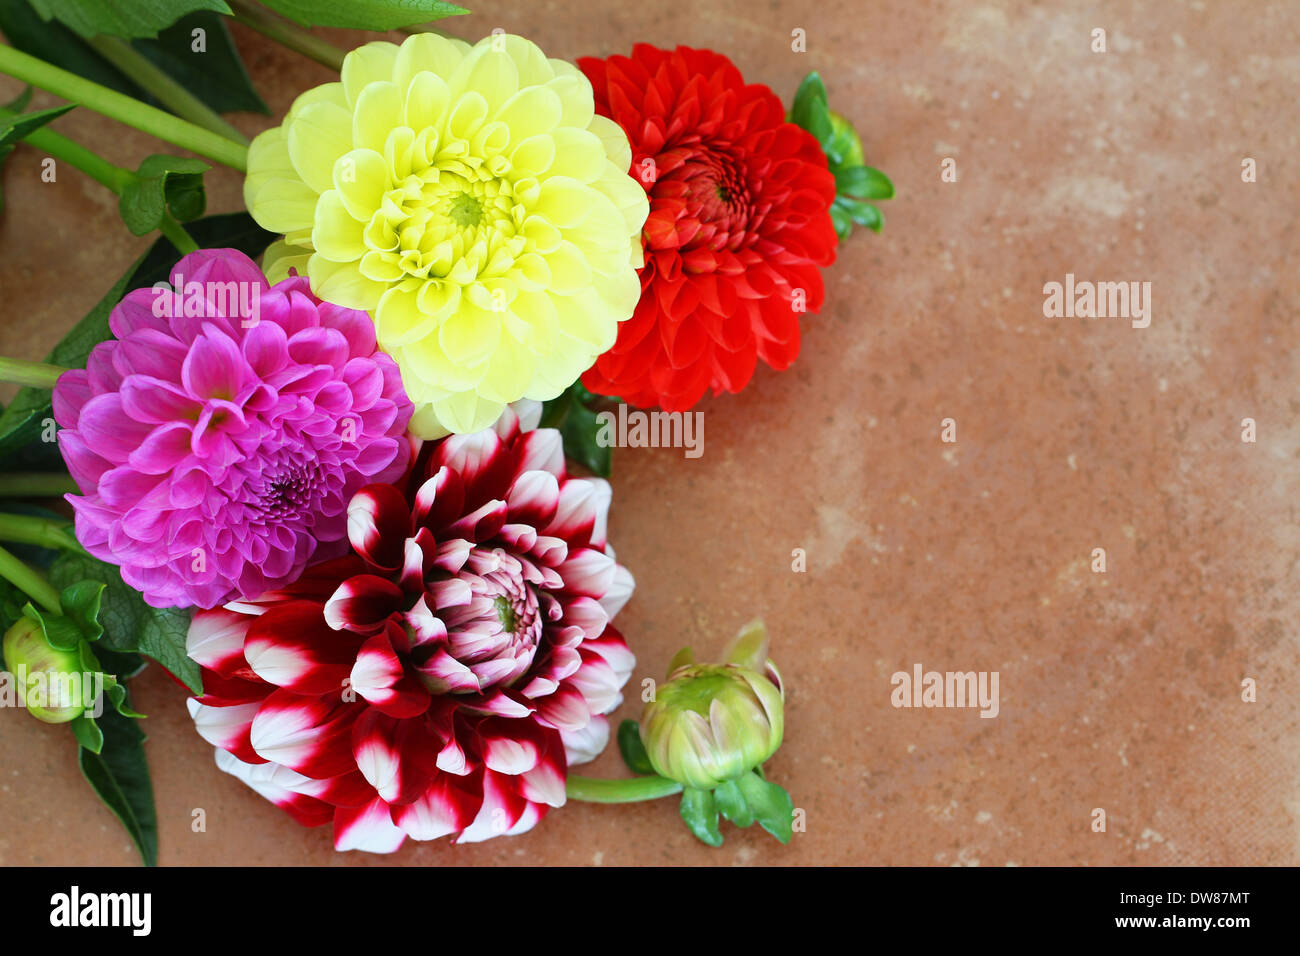 Dahlia fleurs colorées sur la surface de terre cuite avec copie espace Banque D'Images